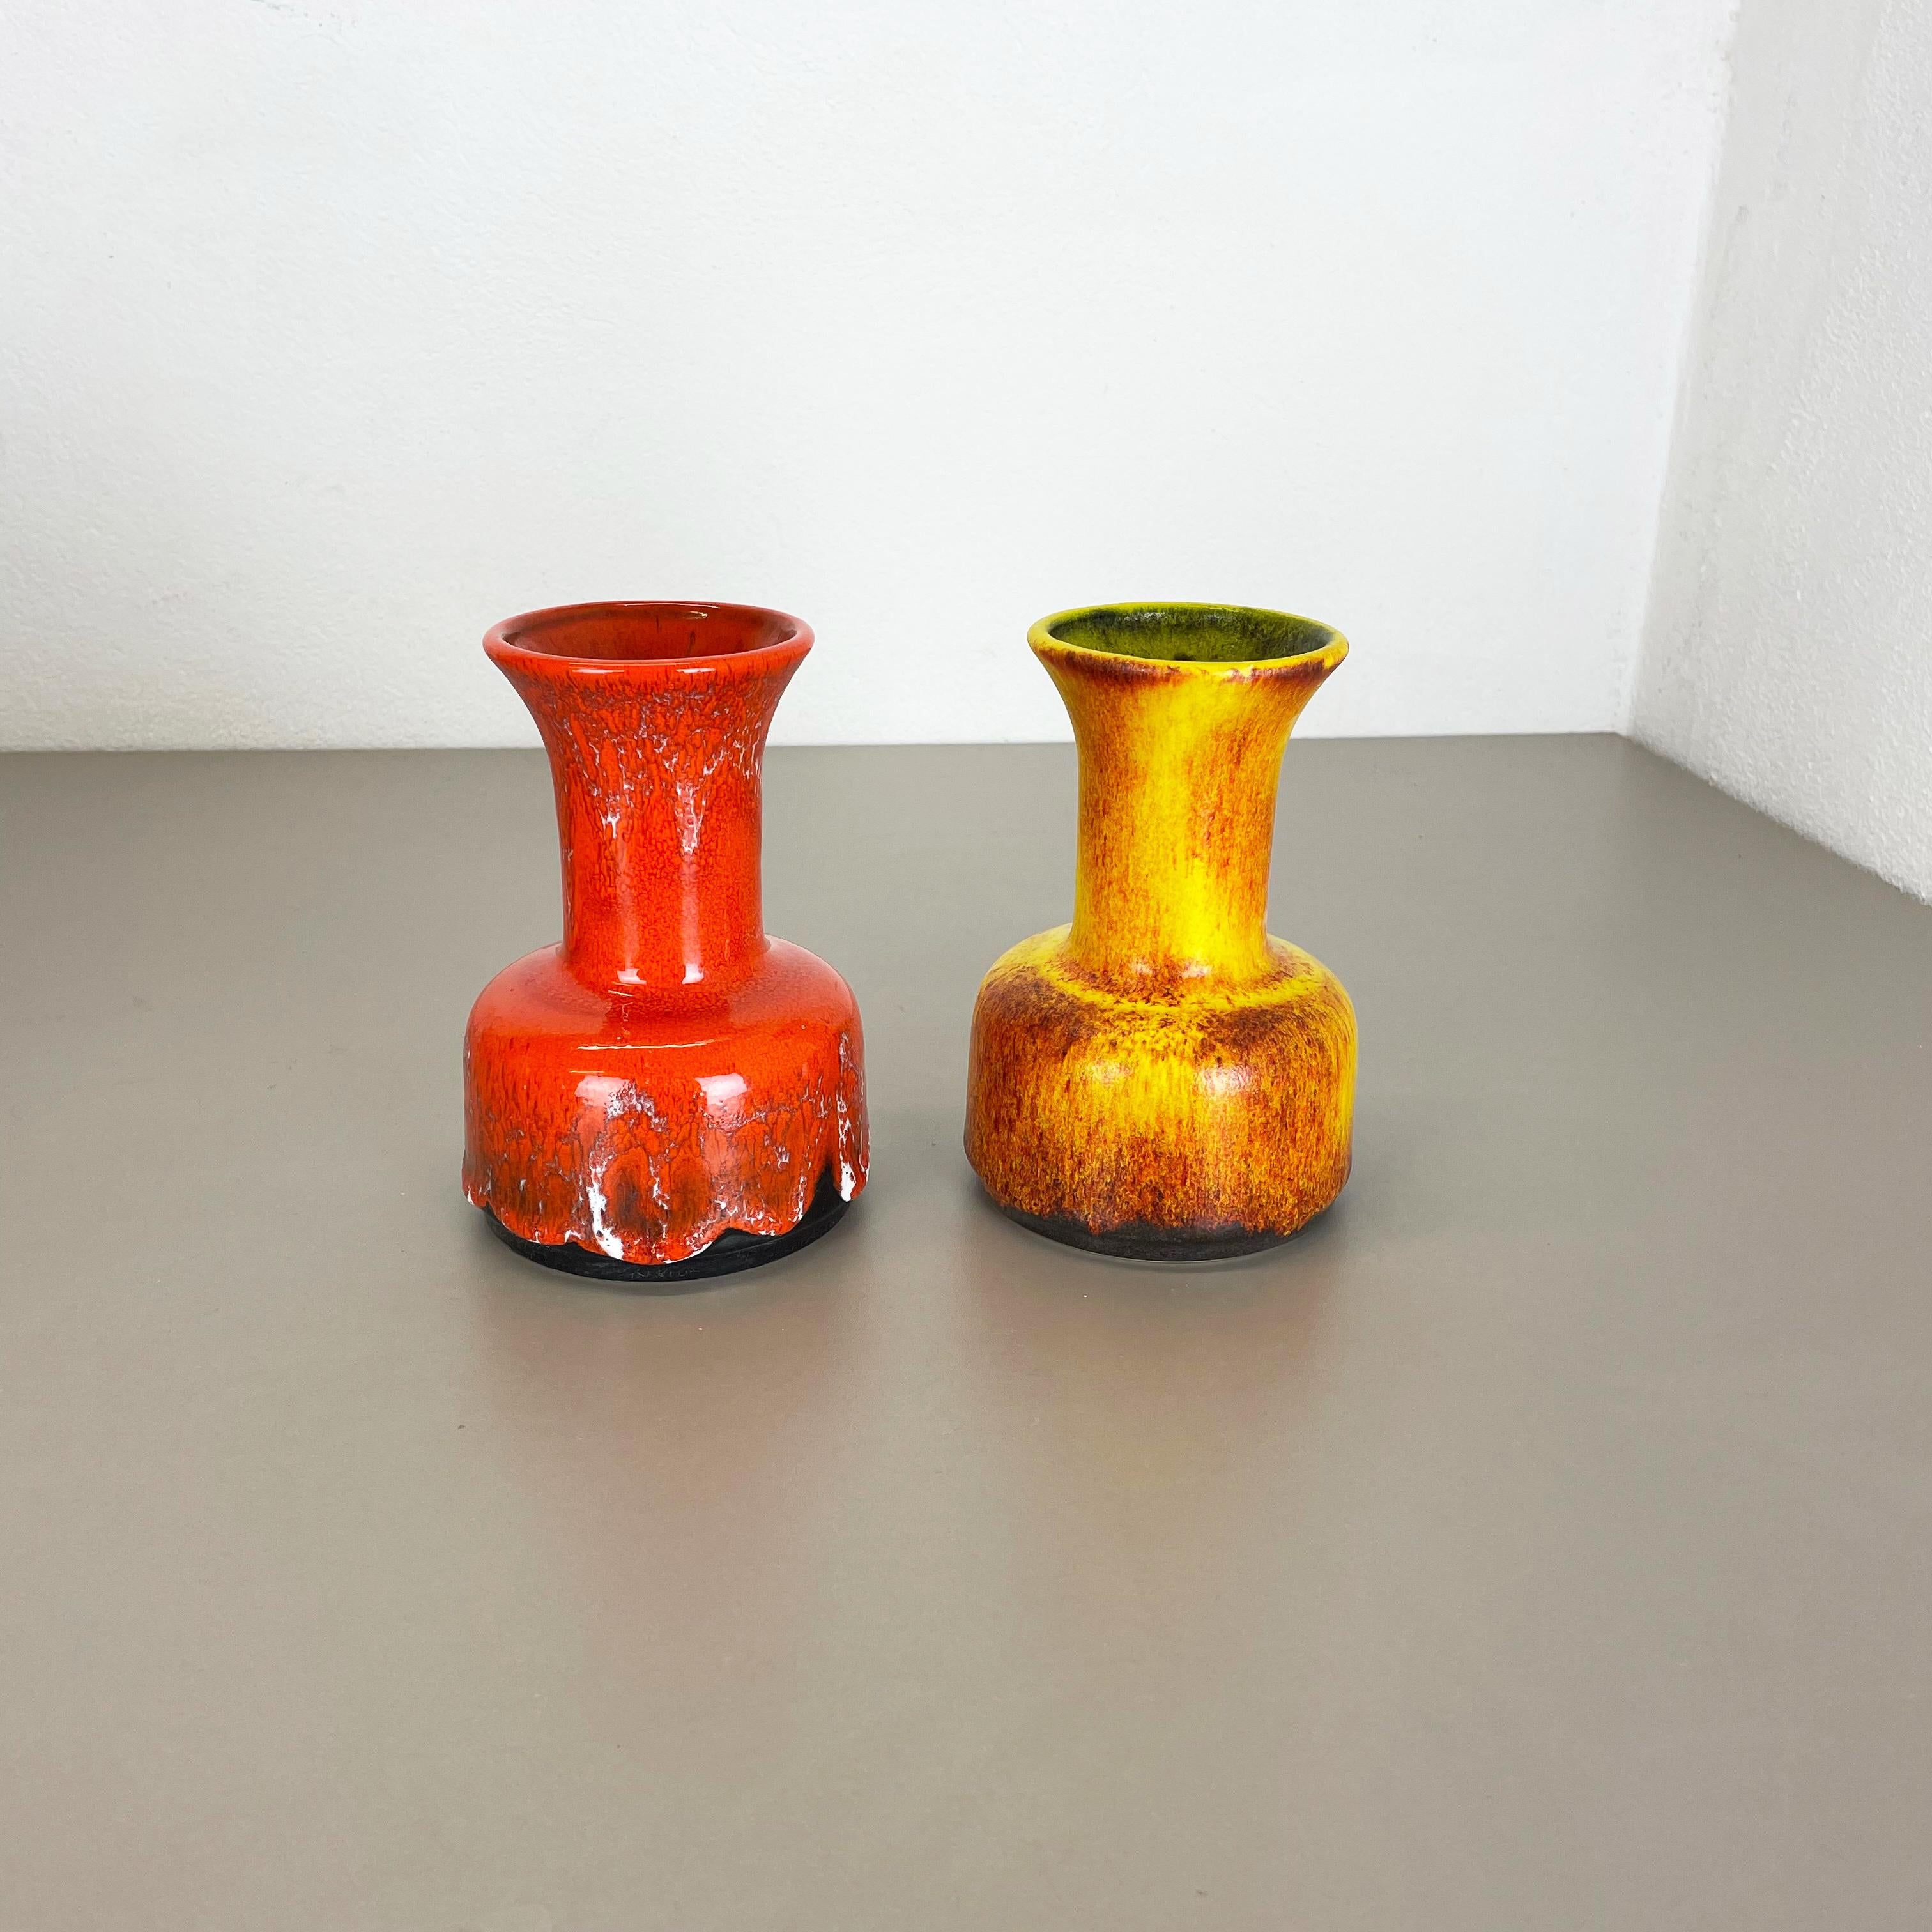 Article :

Ensemble de deux vases d'art de la lave grasse


Producteur :

Jasba Ceramics, Allemagne



Décennie :

1970s




Ces vases vintage originaux ont été produits dans les années 1970 en Allemagne. Il est réalisé en poterie